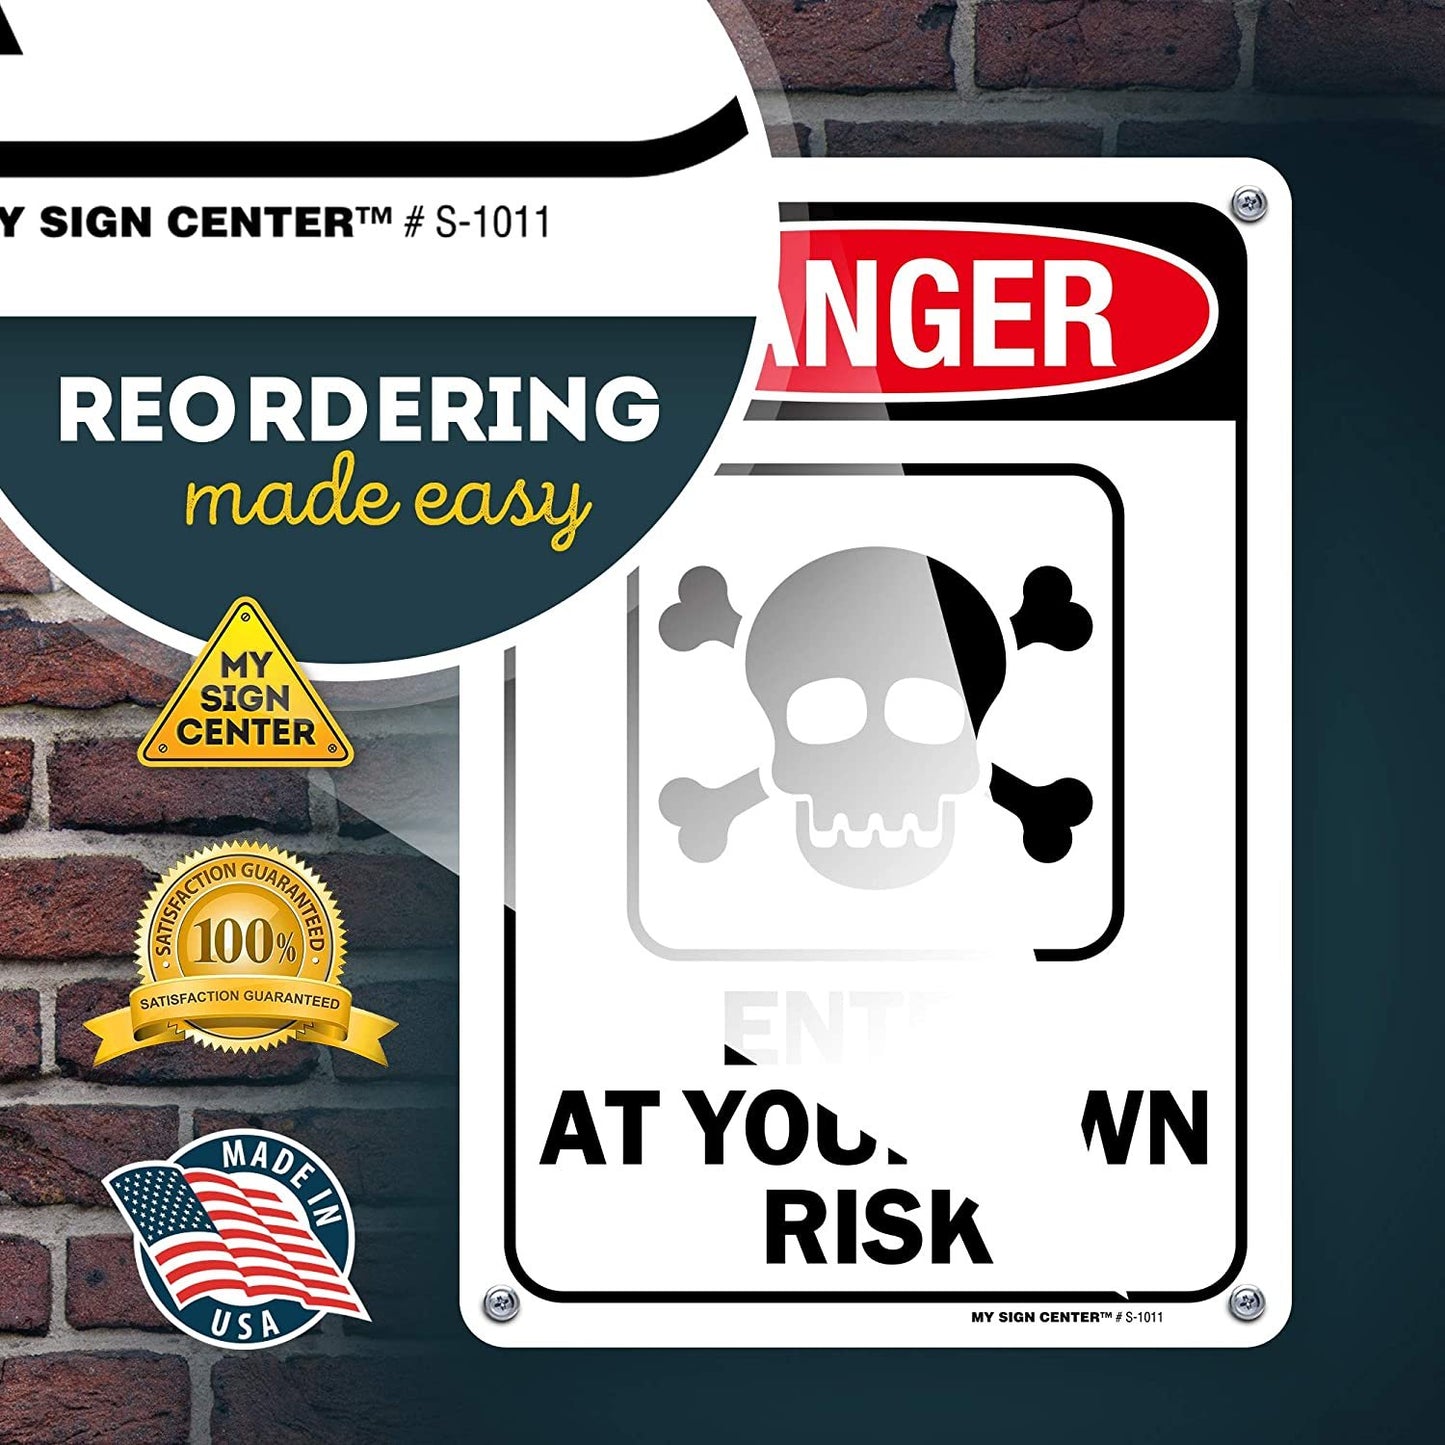 Danger Enter at Your Own Risk Warning Sign